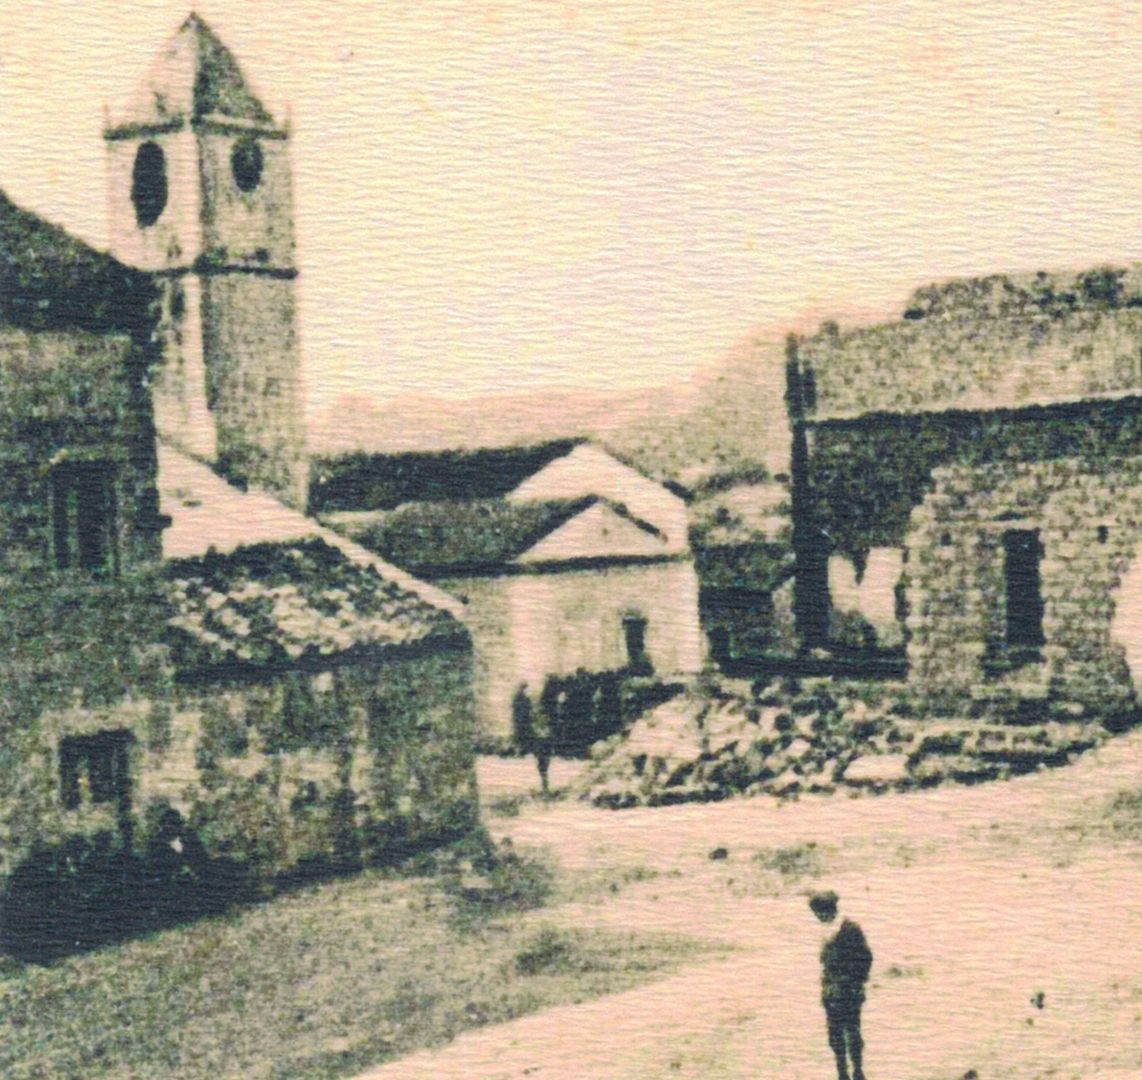 coll. Francesco Cossu, Santa Maria della Neve Church, early 20th century